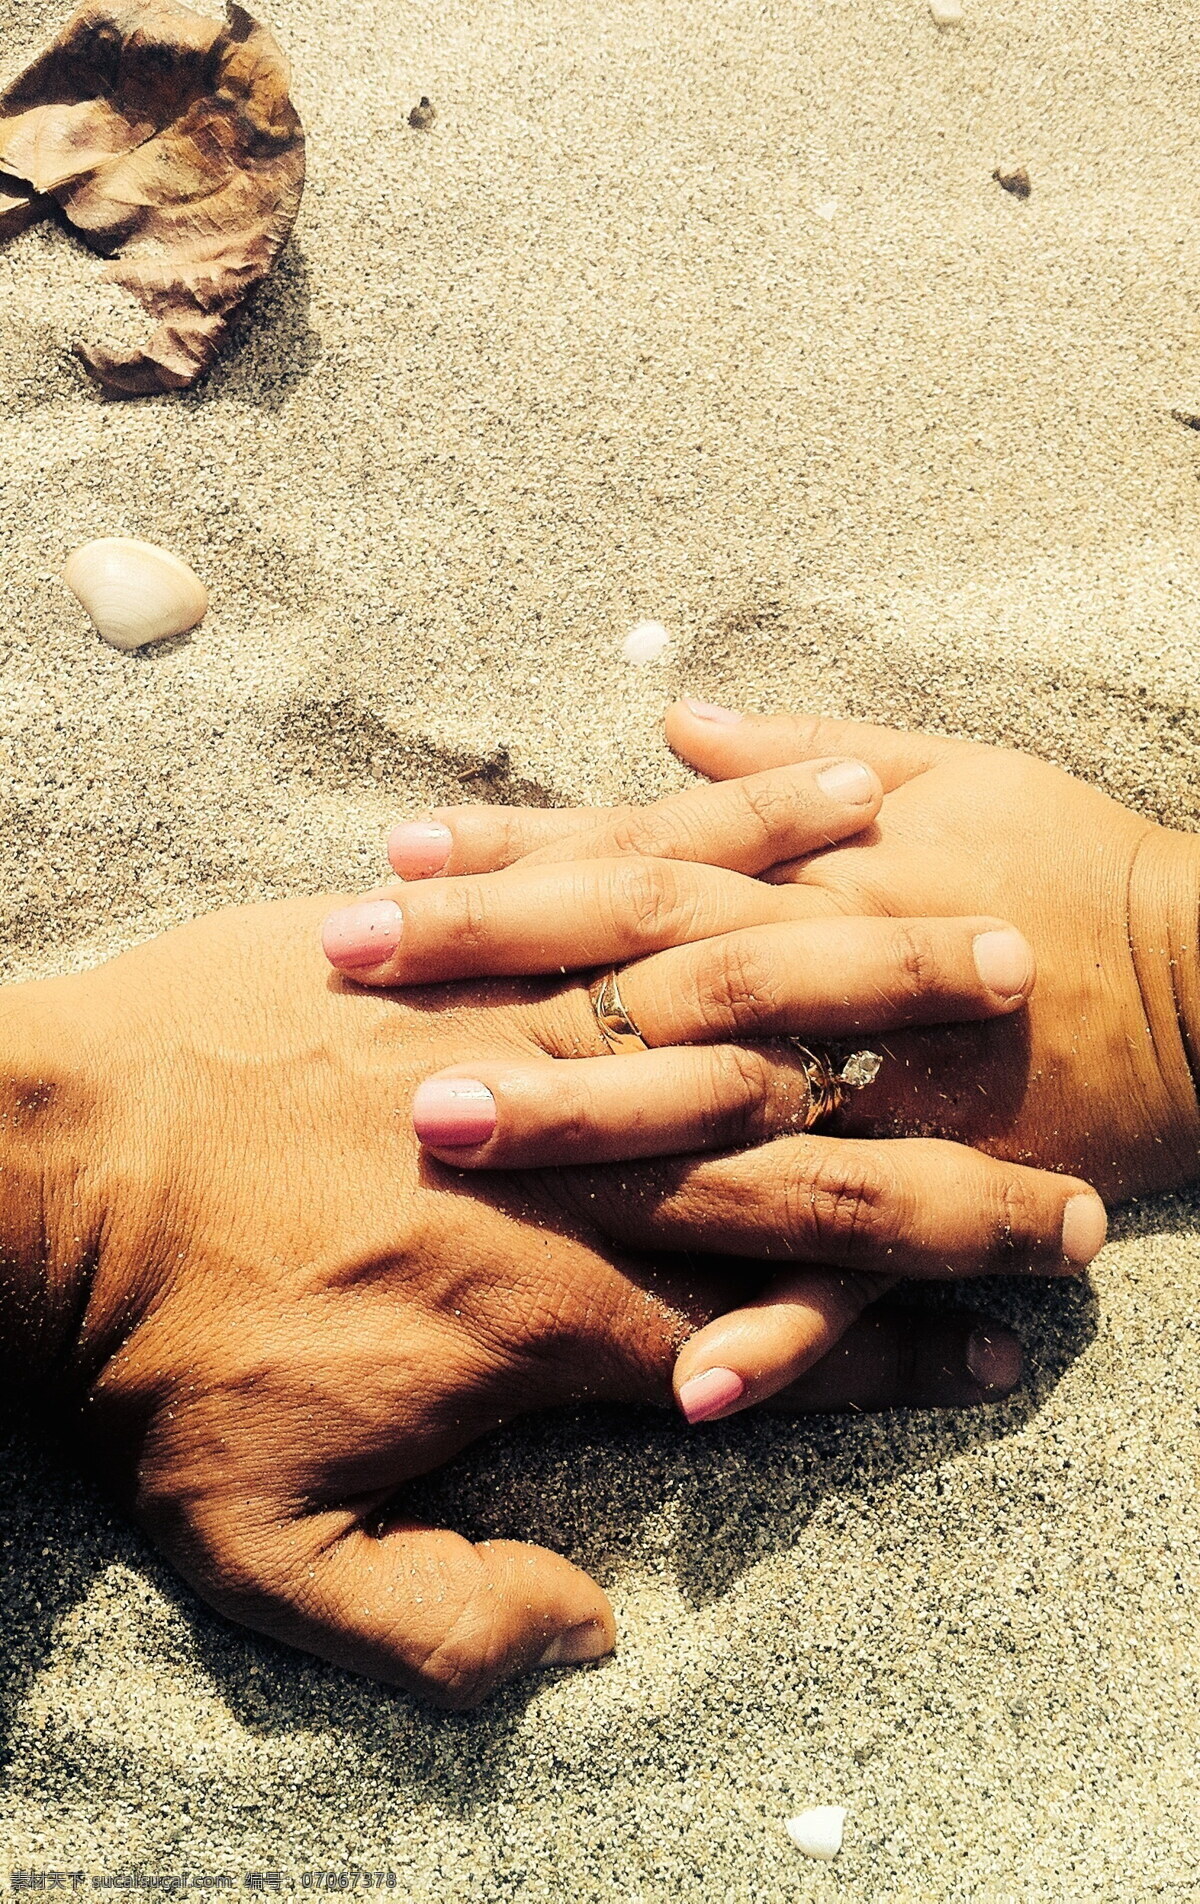 十指 相 扣 双手 十指相扣 手指 手背 沙滩 海滩